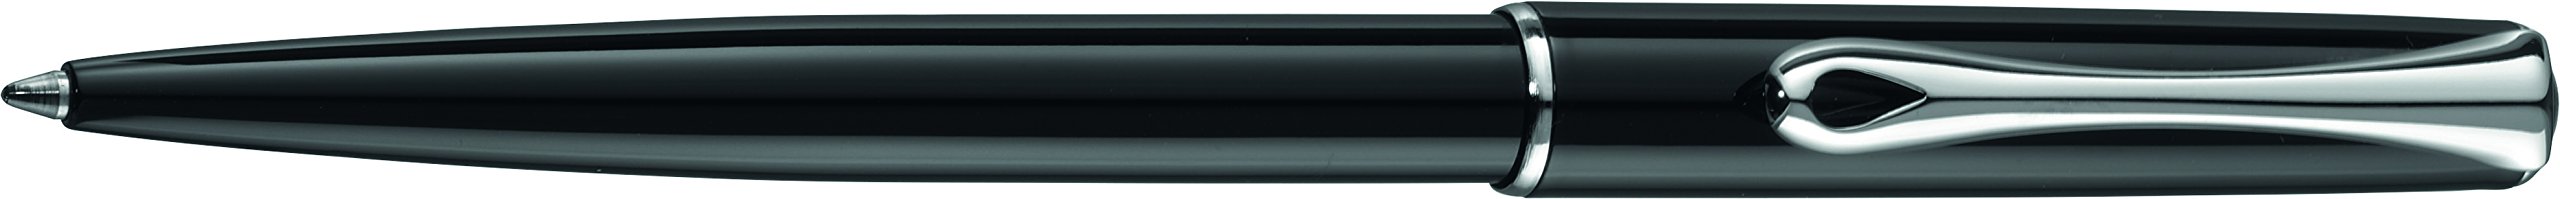 DIPLOMAT - Kugelschreiber Traveller Lack schwarz easyFlow - Schick und elegant - 5-Jahre-Garantie - Langlebig - Lack schwarz